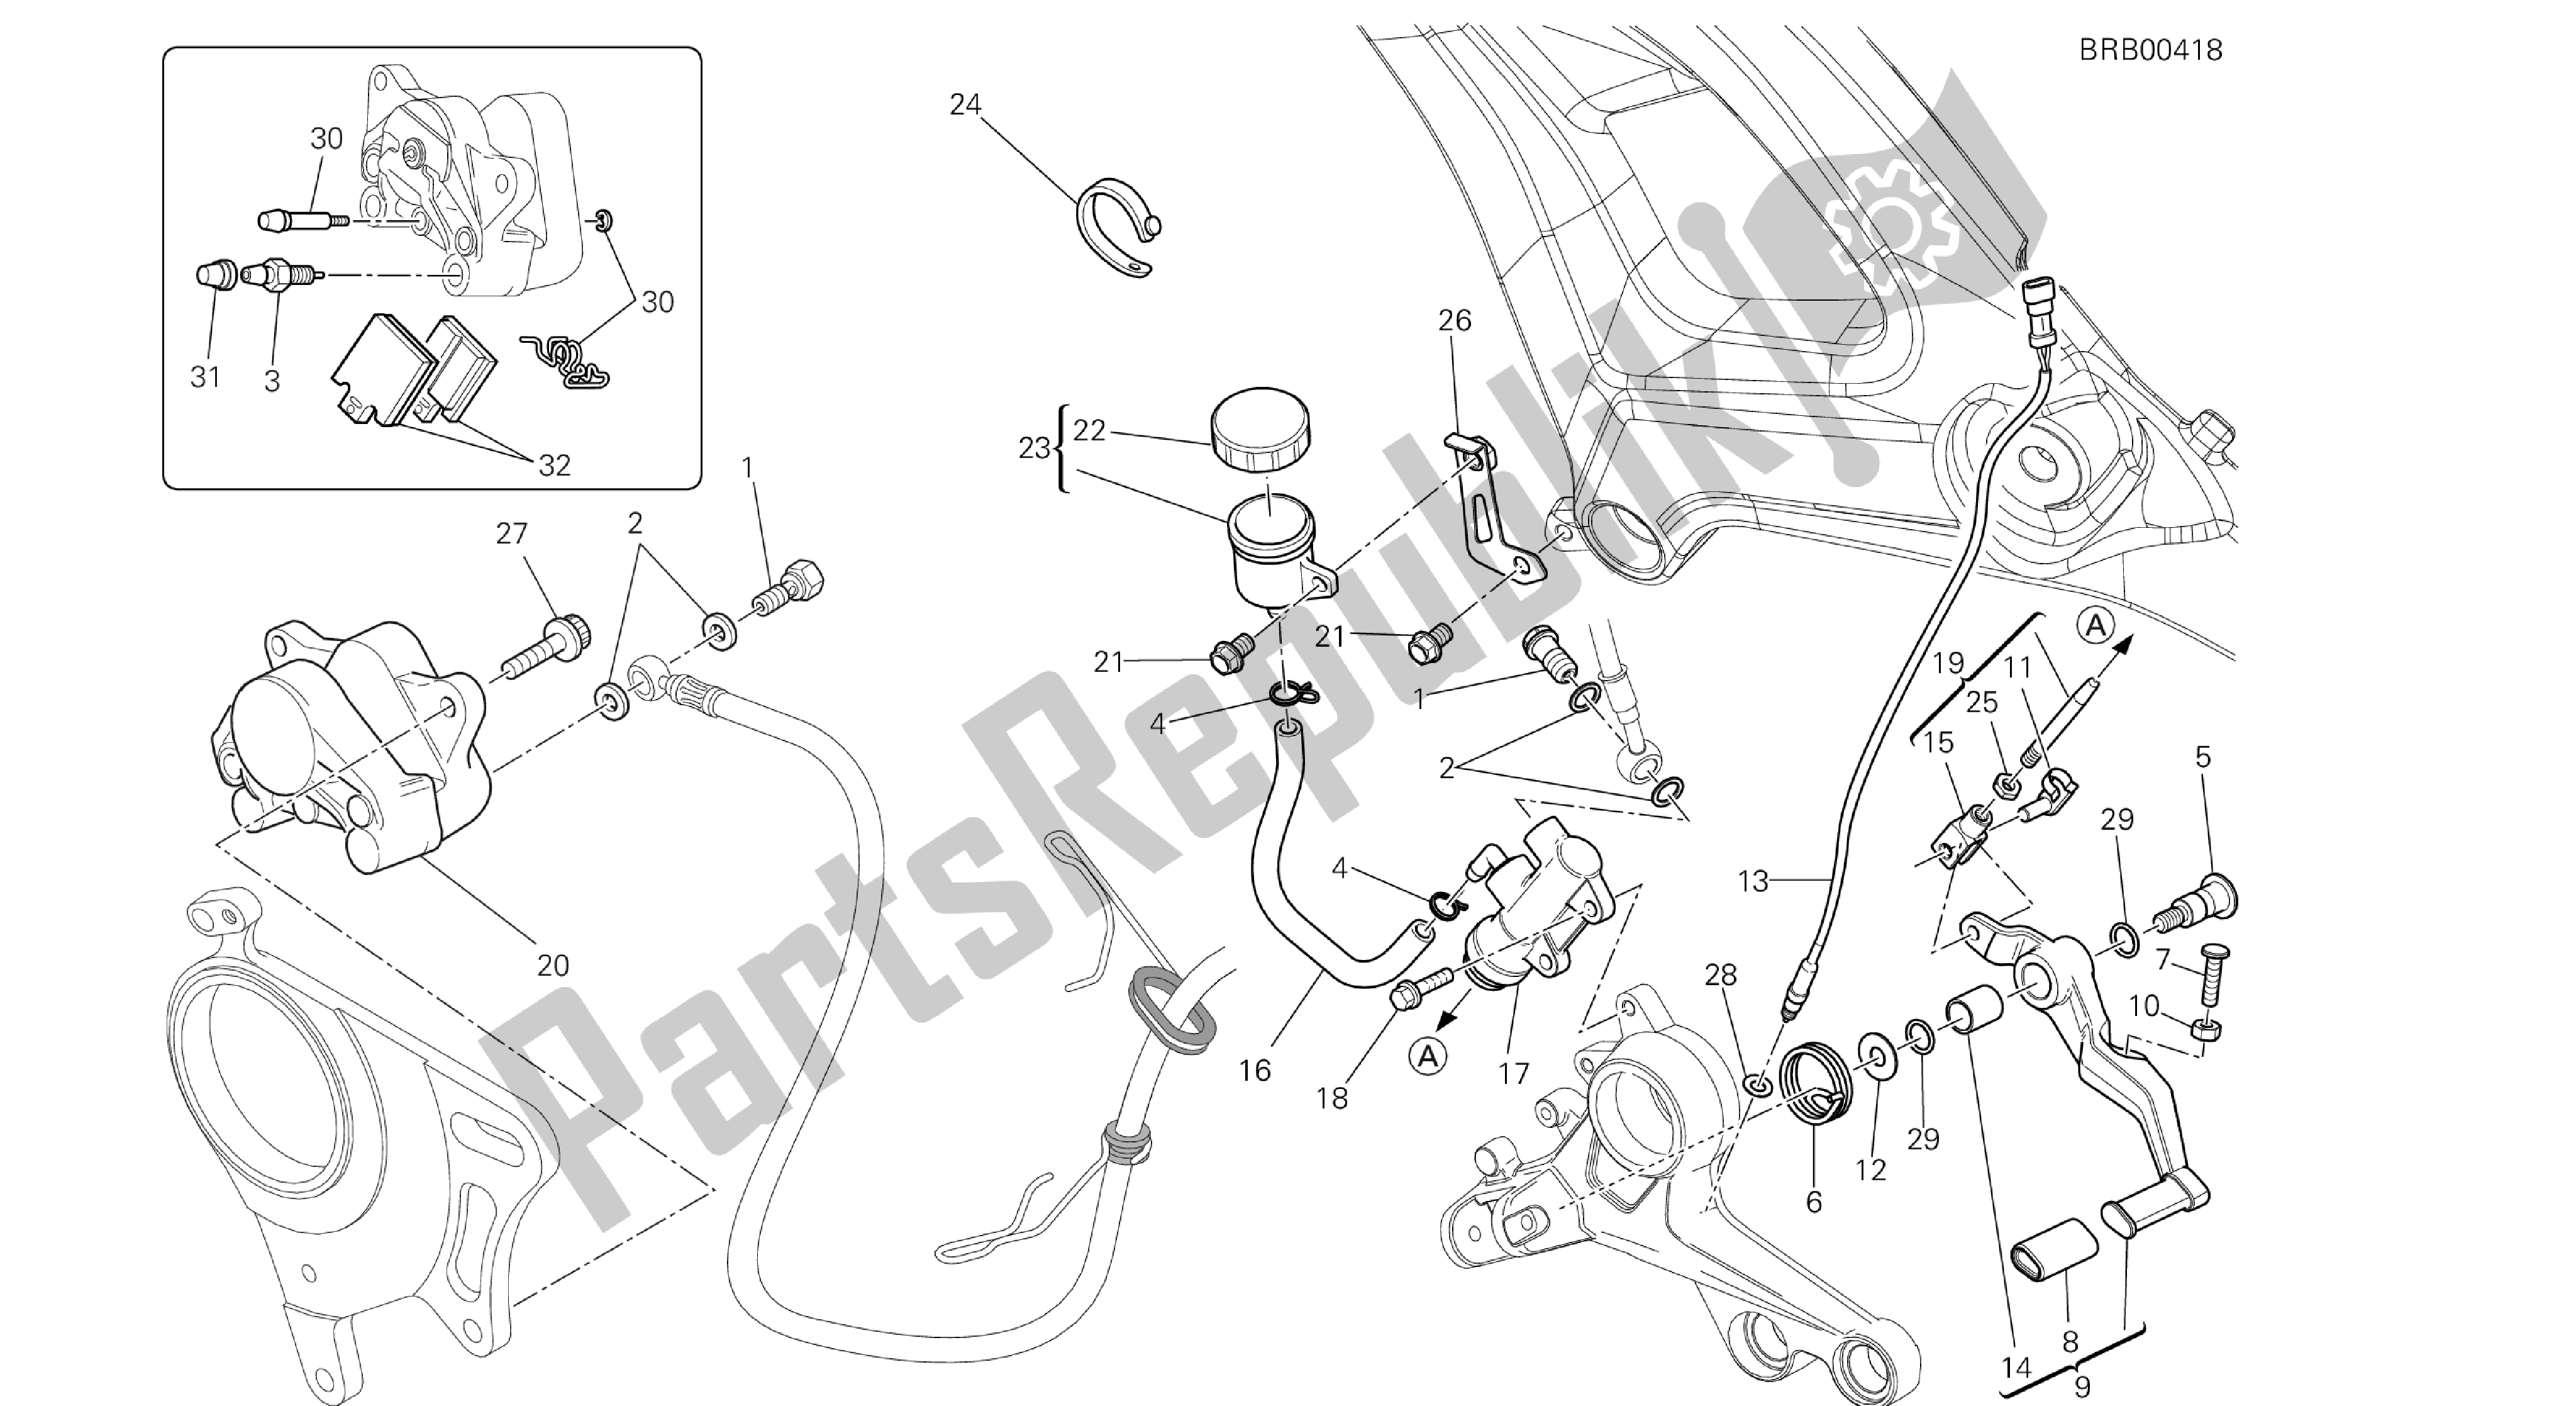 Tutte le parti per il Disegno 029 - Sistema Frenante Posteriore [mod: M1100dsl; Xst: Aus, Chn, Eur, Jap] Group Fr Ame del Ducati Monster 1100 2013